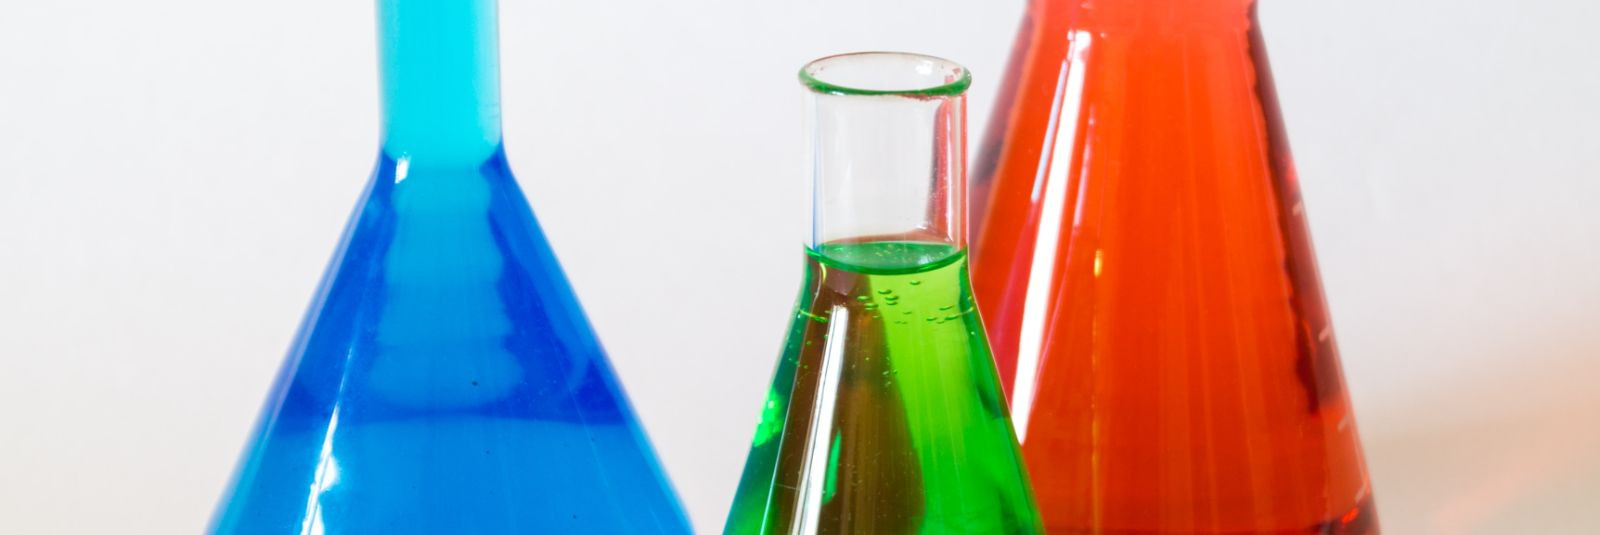 Kemikaalid on meie igapäevaelus laialdaselt kasutatavad ained, mida leidub kõikjal alates kodumajapidamiste puhastusvahenditest ja toiduainetest kuni tööstuslik